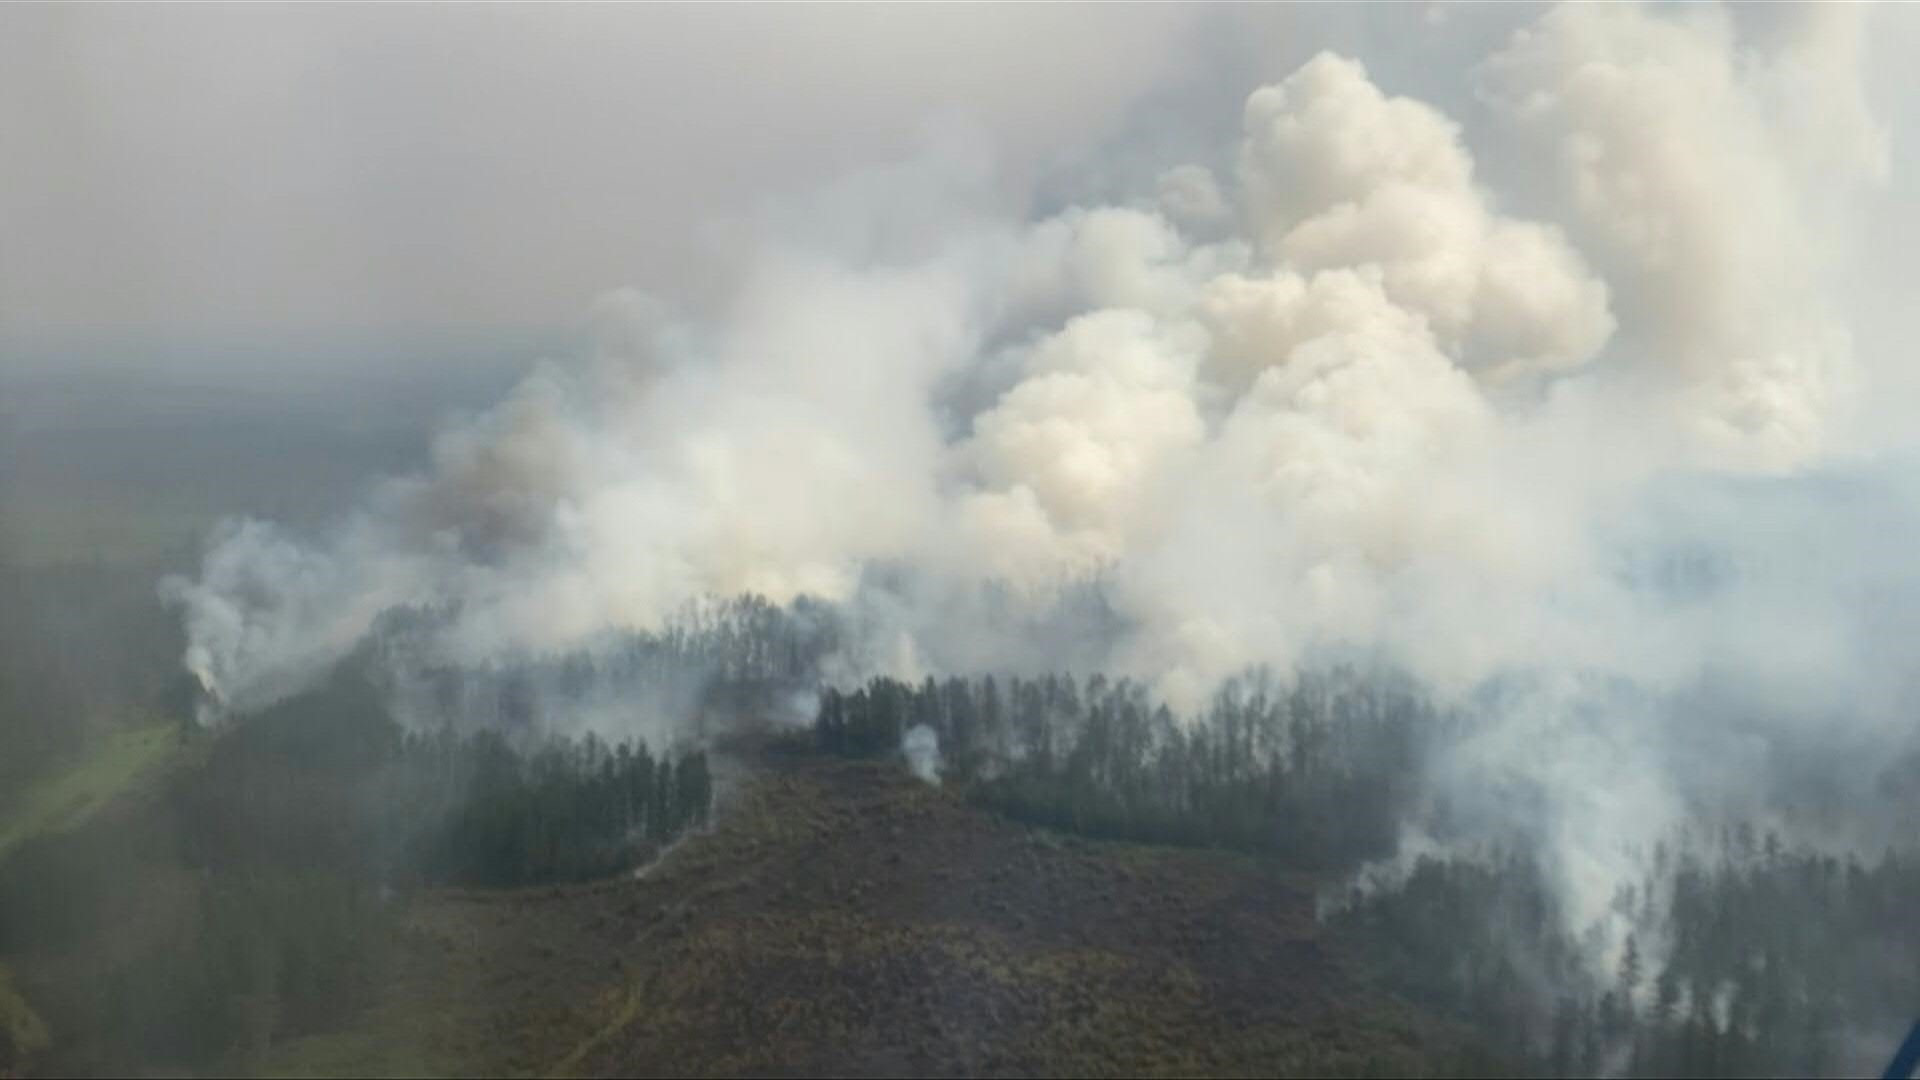 Los incendios forestales se duplicaron en todo el mundo en los últimos 20 años, en particular en los bosques boreales, "probablemente" a causa del cambio climático, según un estudio publicado este miércoles.